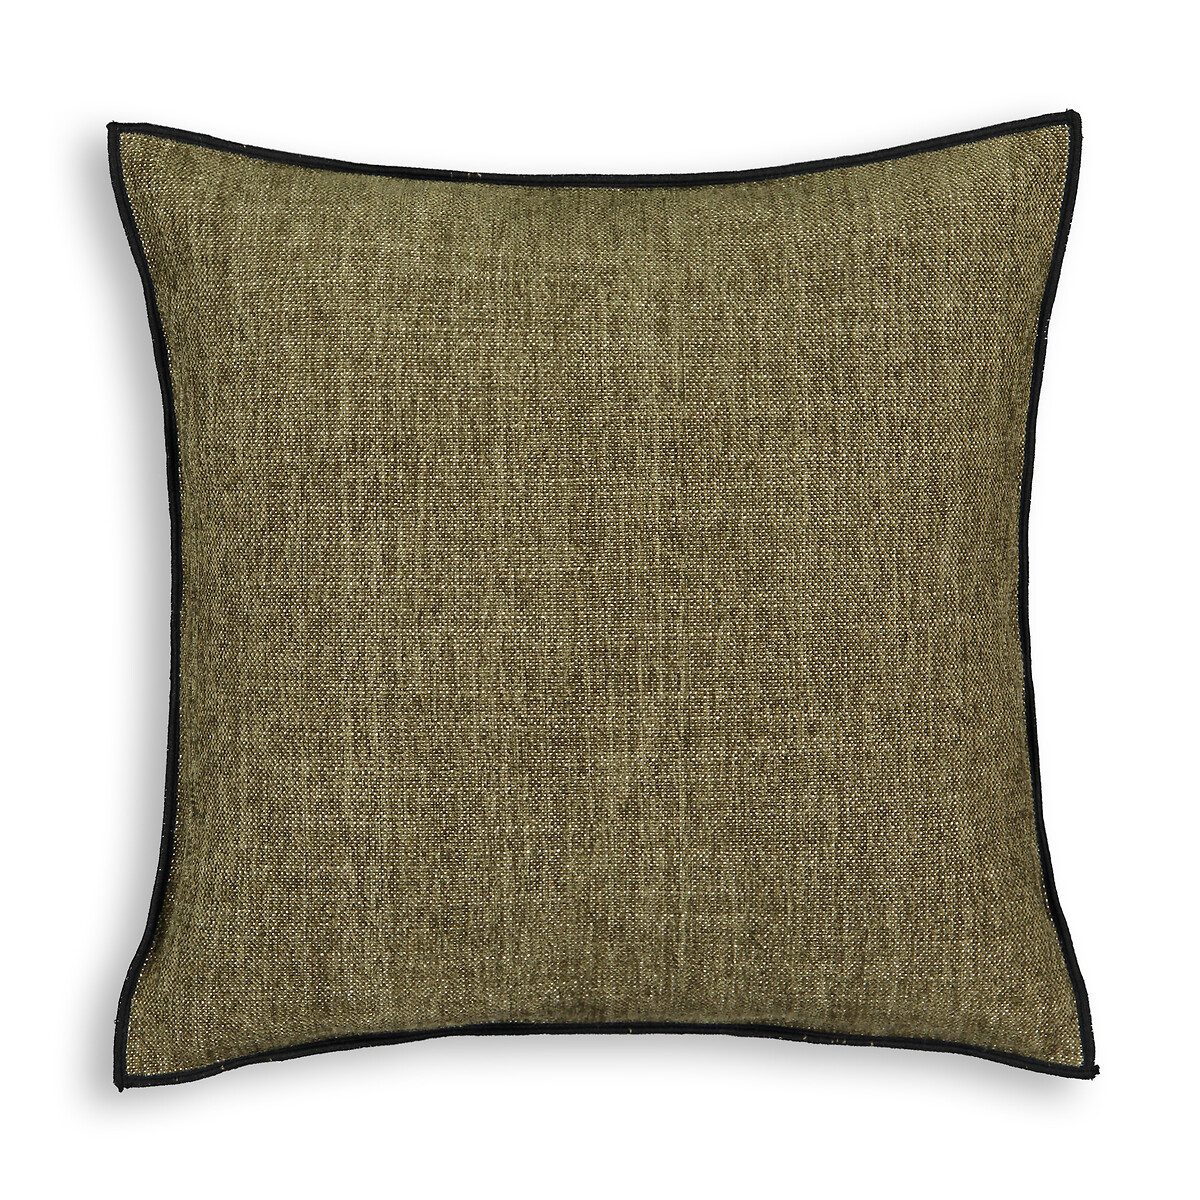 Чехол На подушку с эффектом синели Figuera 100 полиэстер 40 x 40 см зеленый